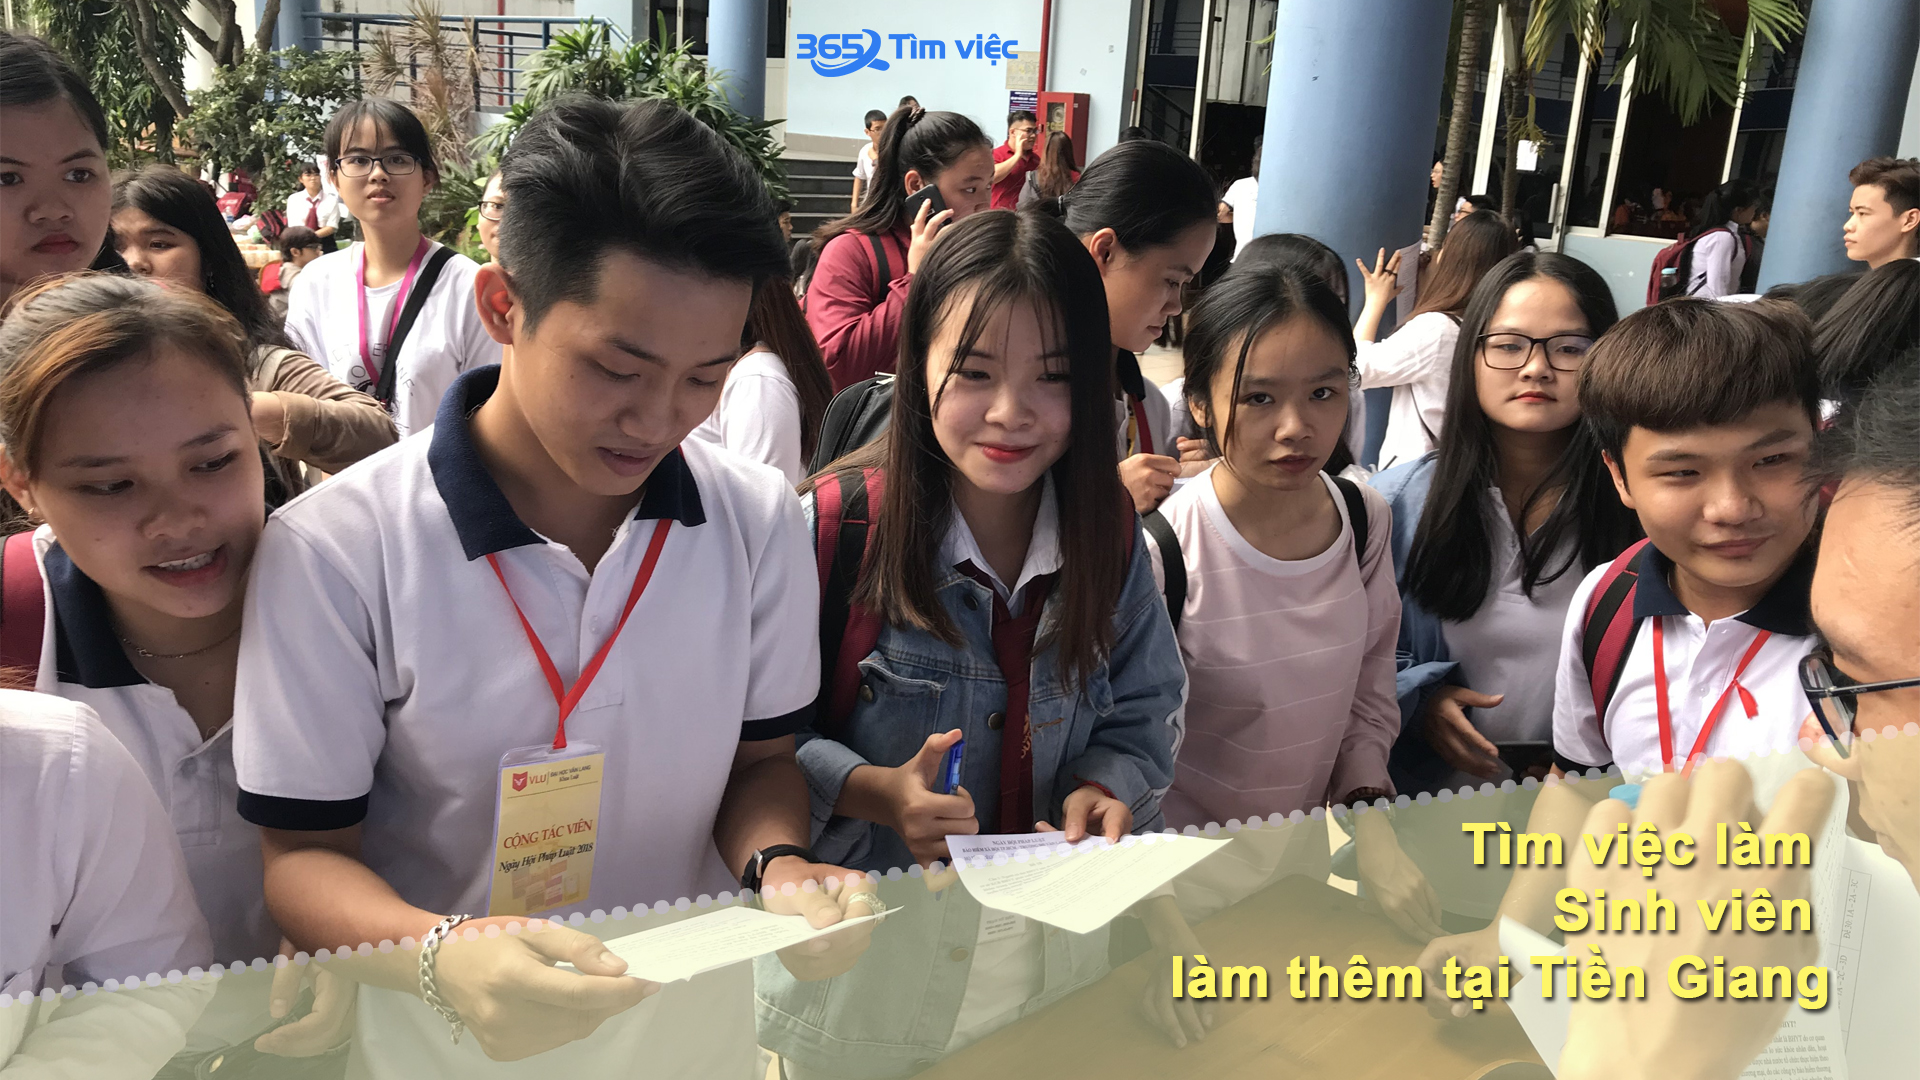 Website tìm việc làm thêm cho sinh viên ở Tiền Giang uy tín